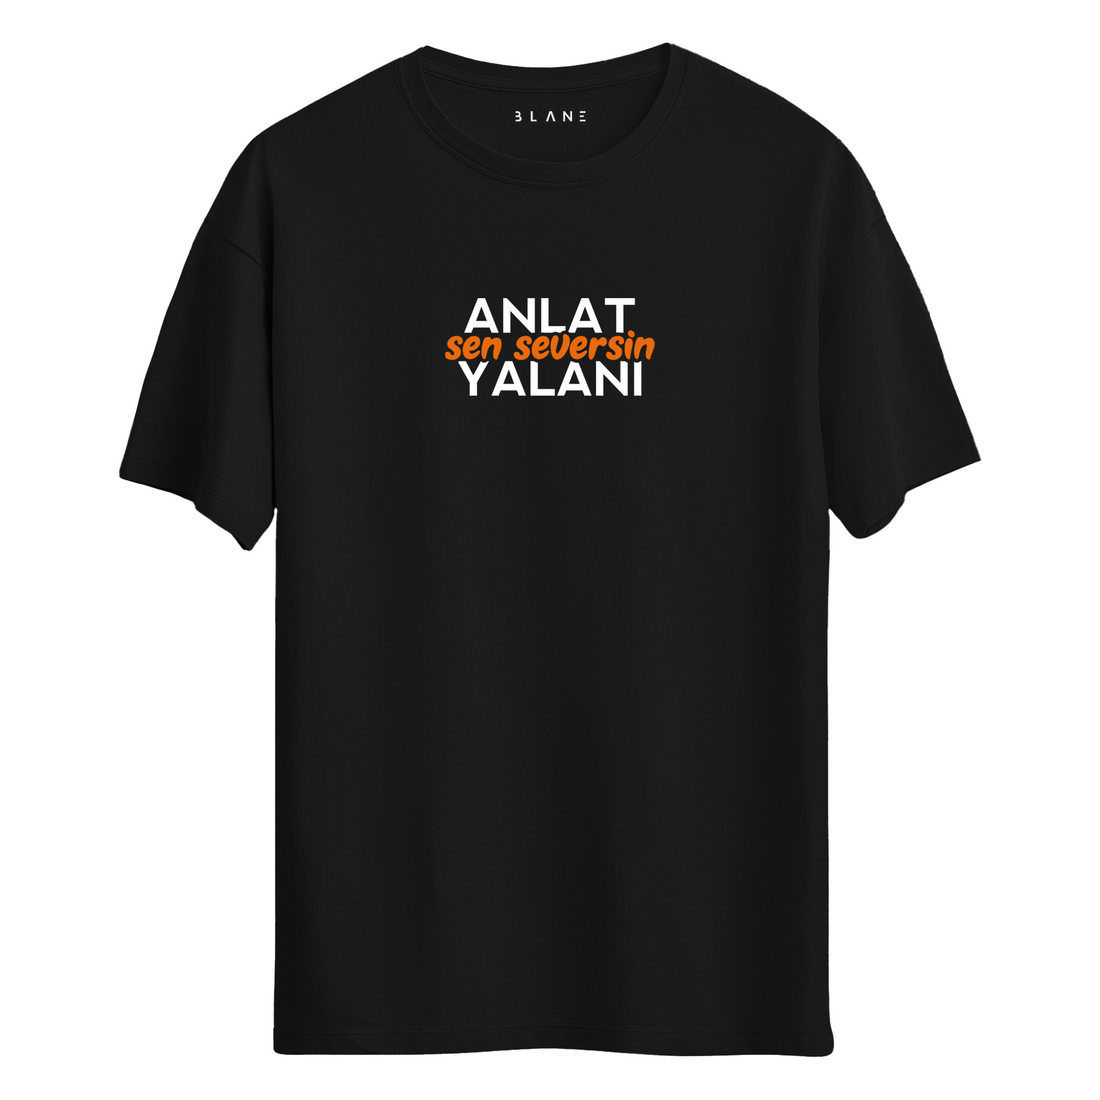 ANLAT SEN SEVERSİN YALANI - T-Shirt